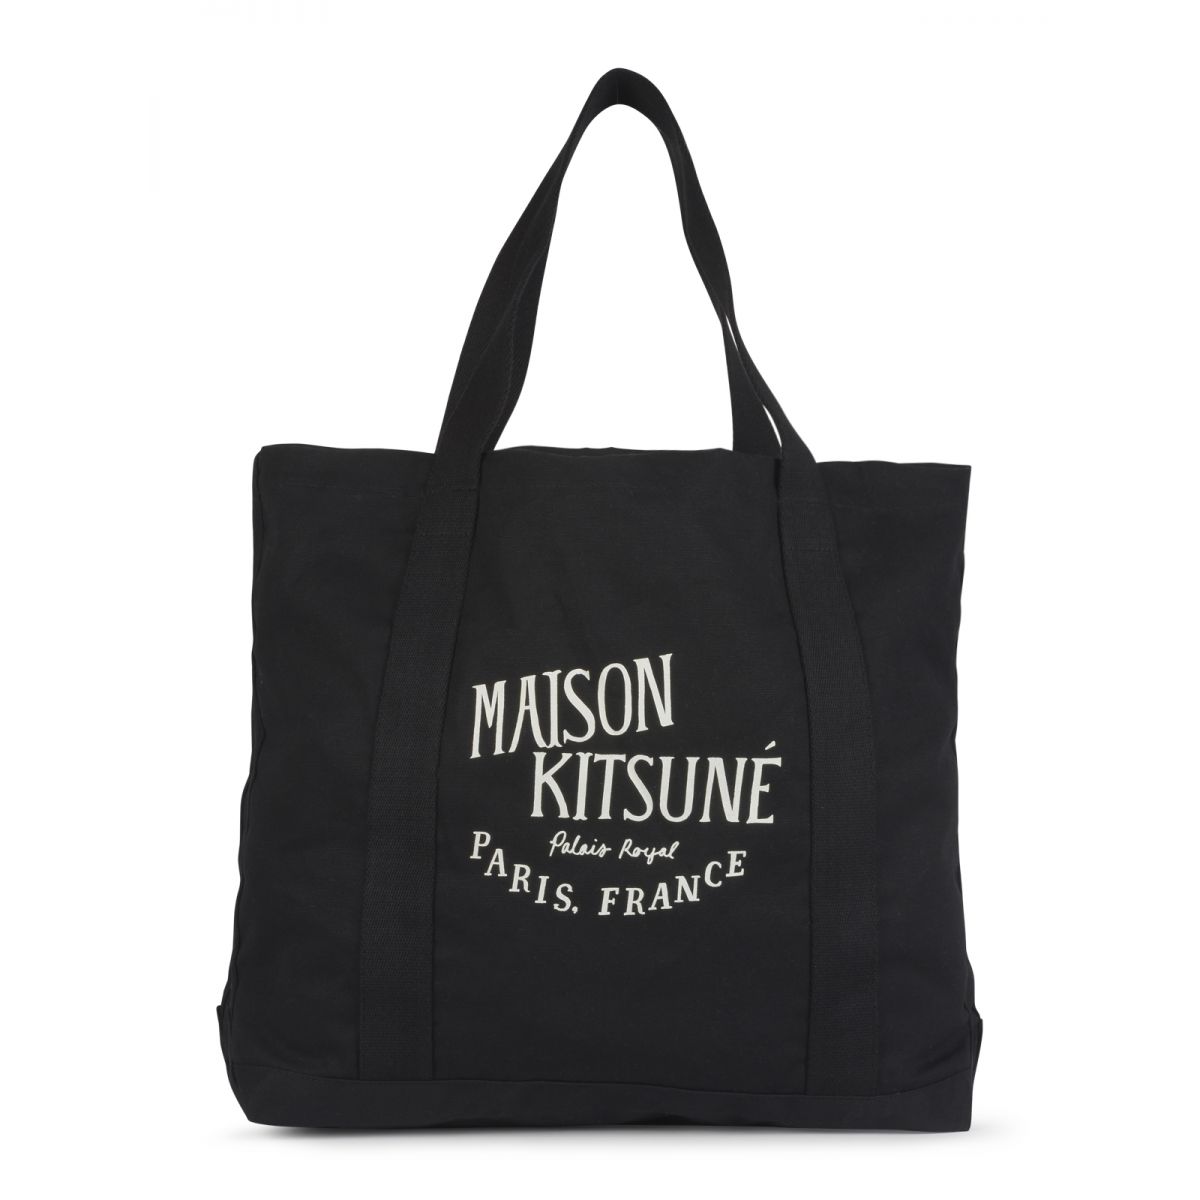 MAISON KITSUNE - Cotton canvas tote bag unisex